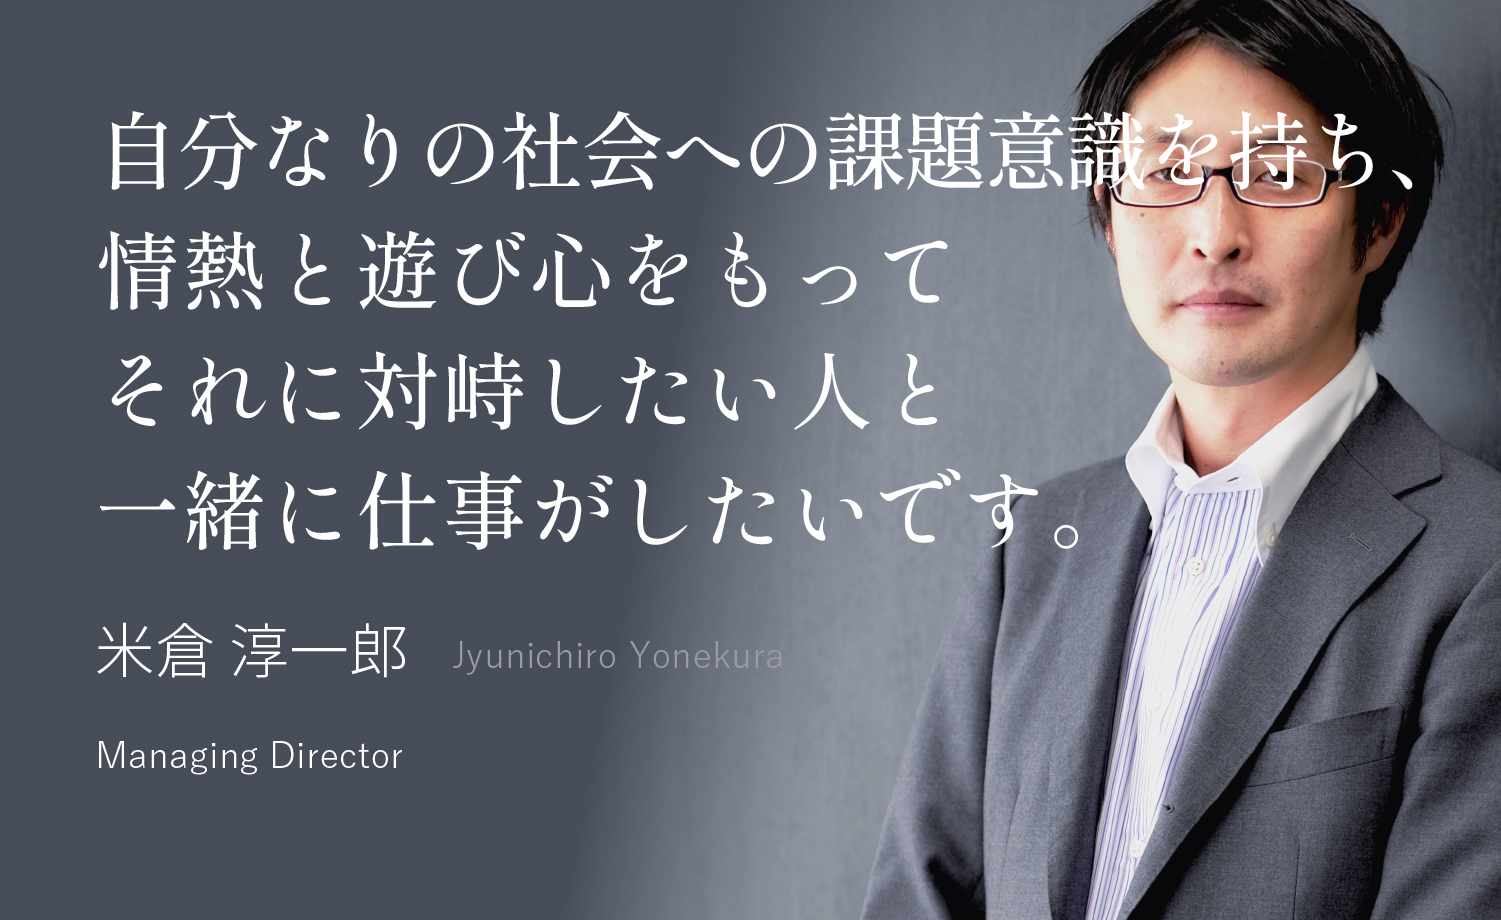 不確かな未来を、自分の頭と足で、切り拓こう 小川 達大 Tatsuhiro Ogawa Managing Director, Group Board Member, oriri President